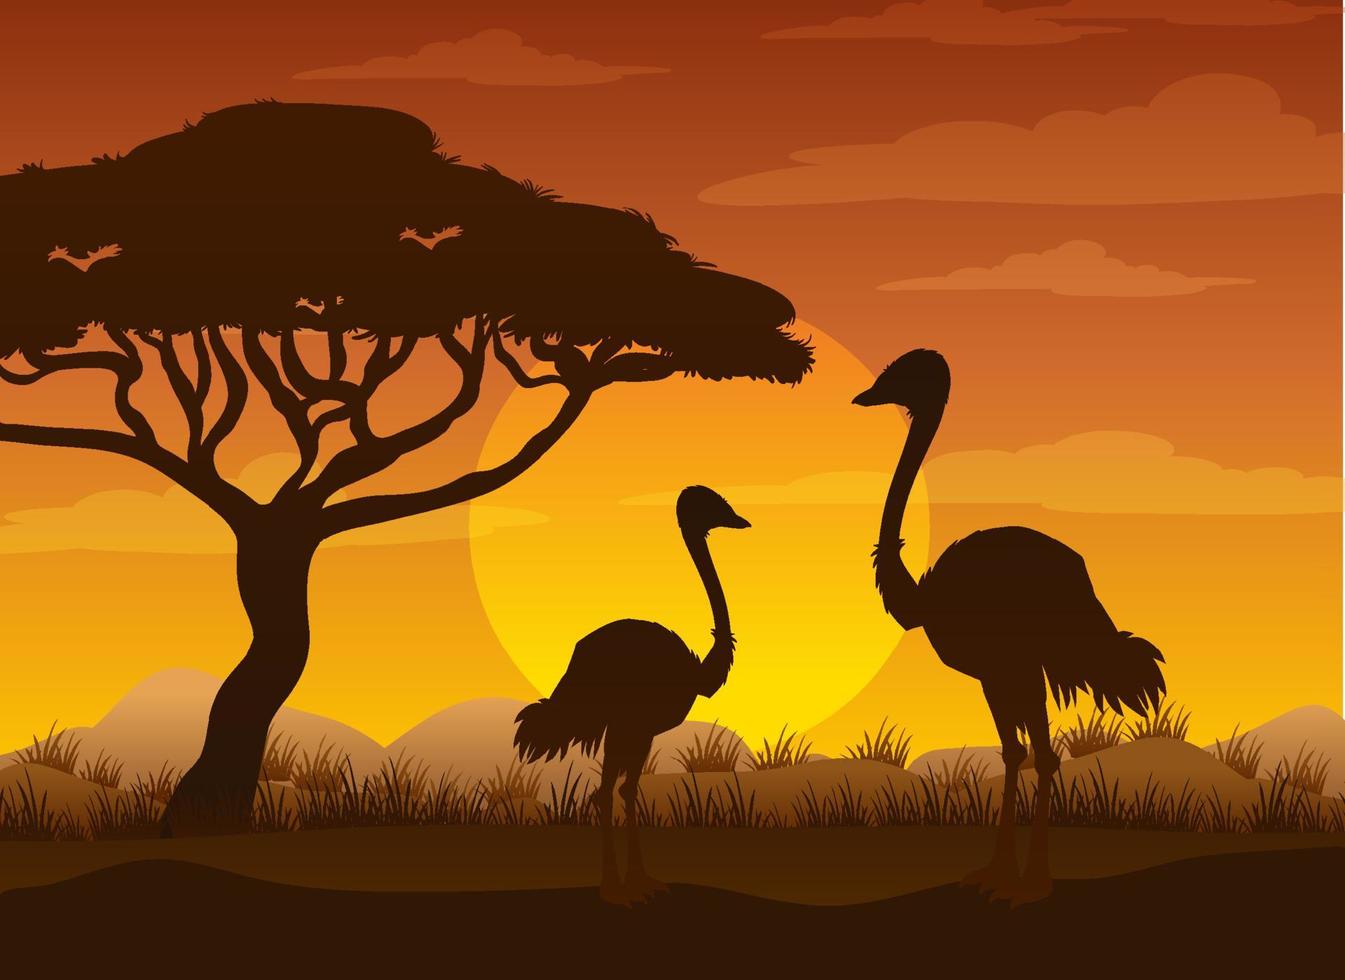 Silhouette savanna forest with wild animals vector